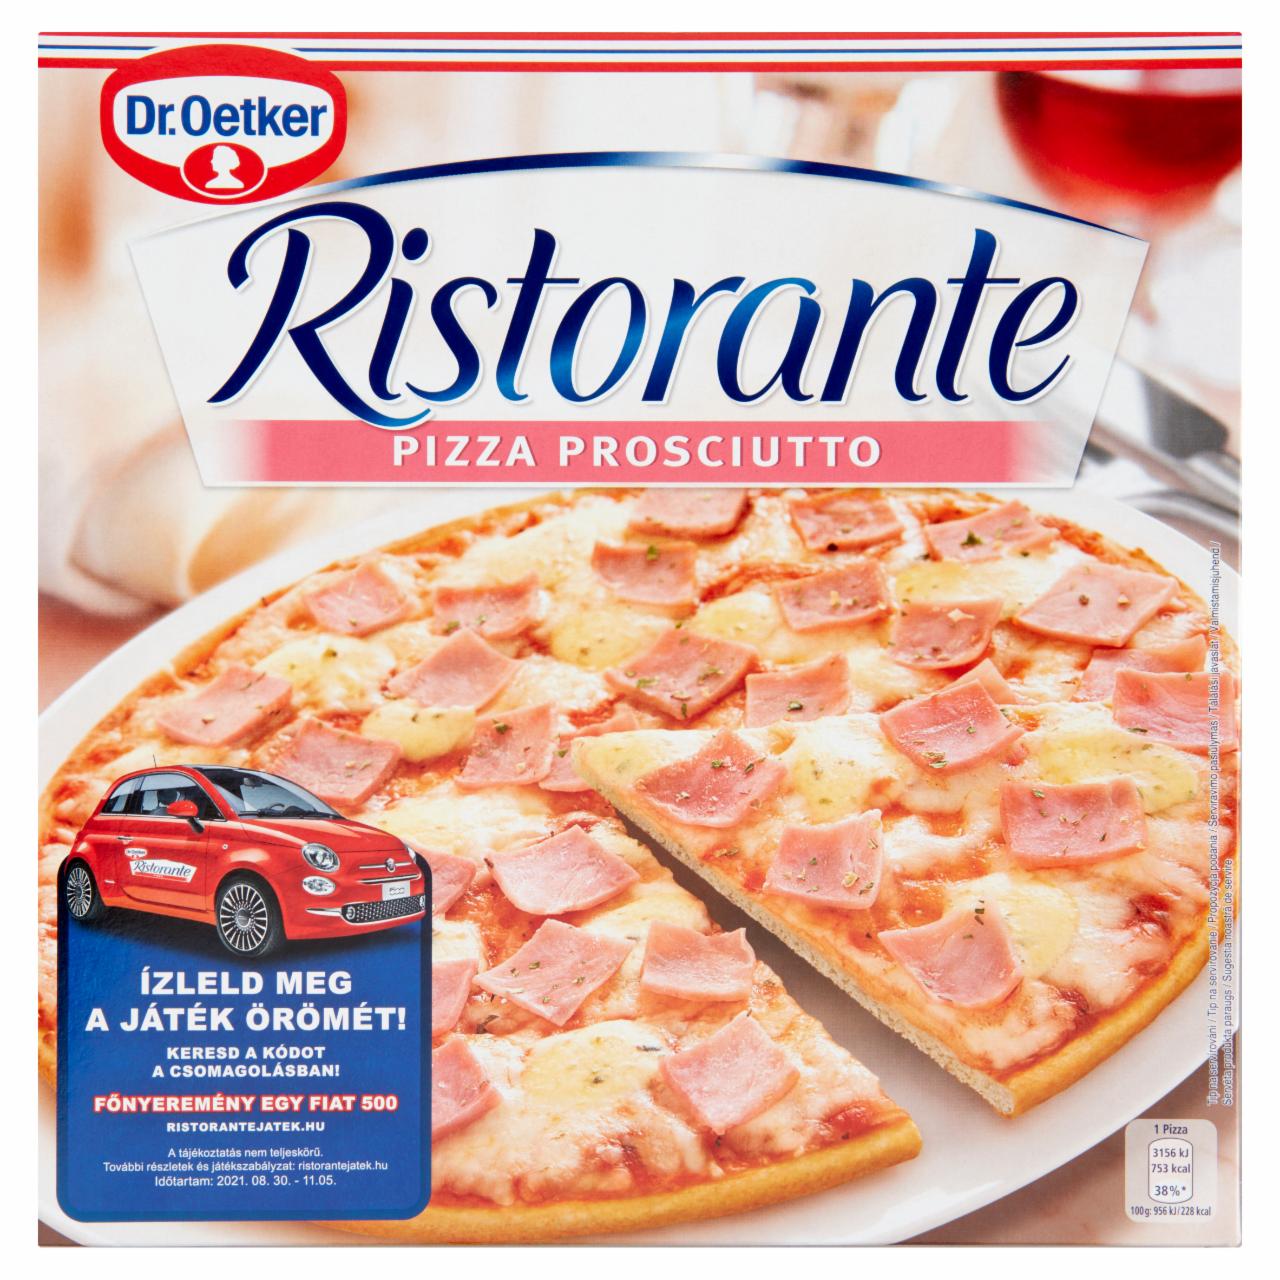 Fotografie - Pizza Ristorante Prosciutto Dr.Oetker